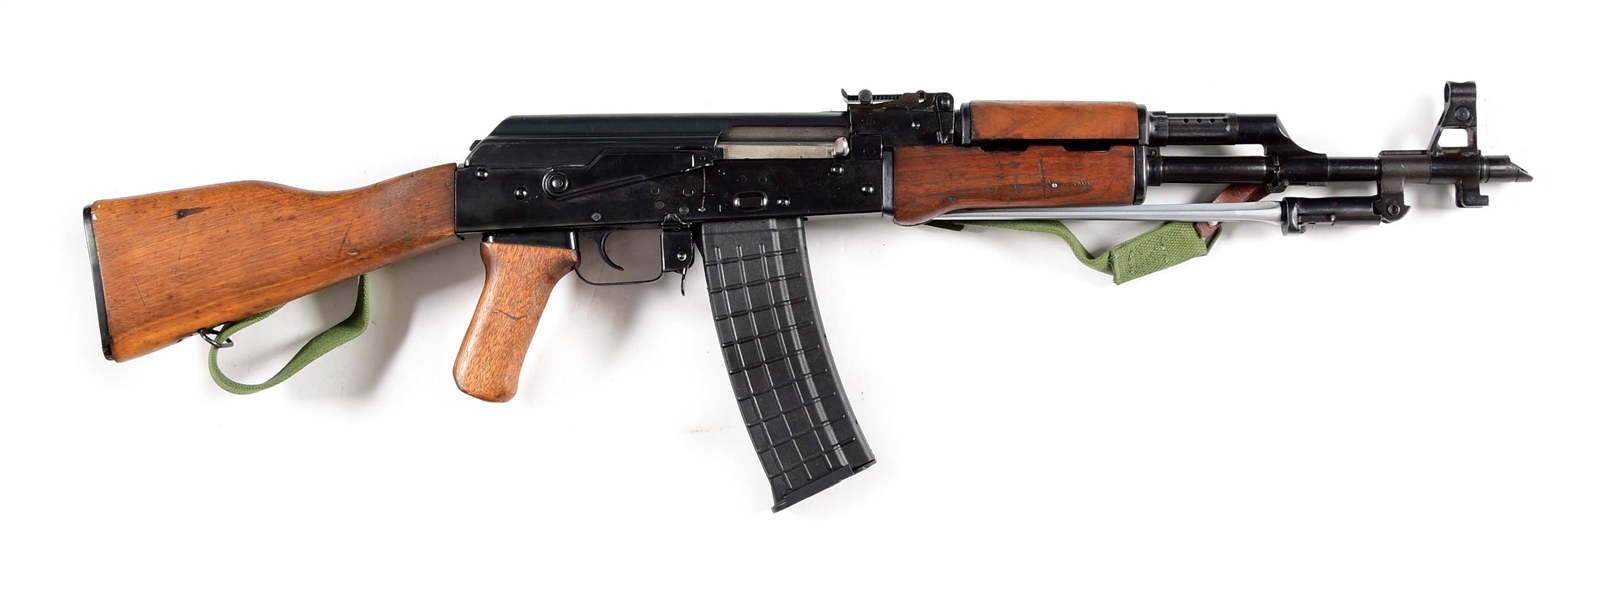 (N) SWD REGISTERED POLYTECH AKS-223 AKM SELECT FIRE MACHINE GUN.